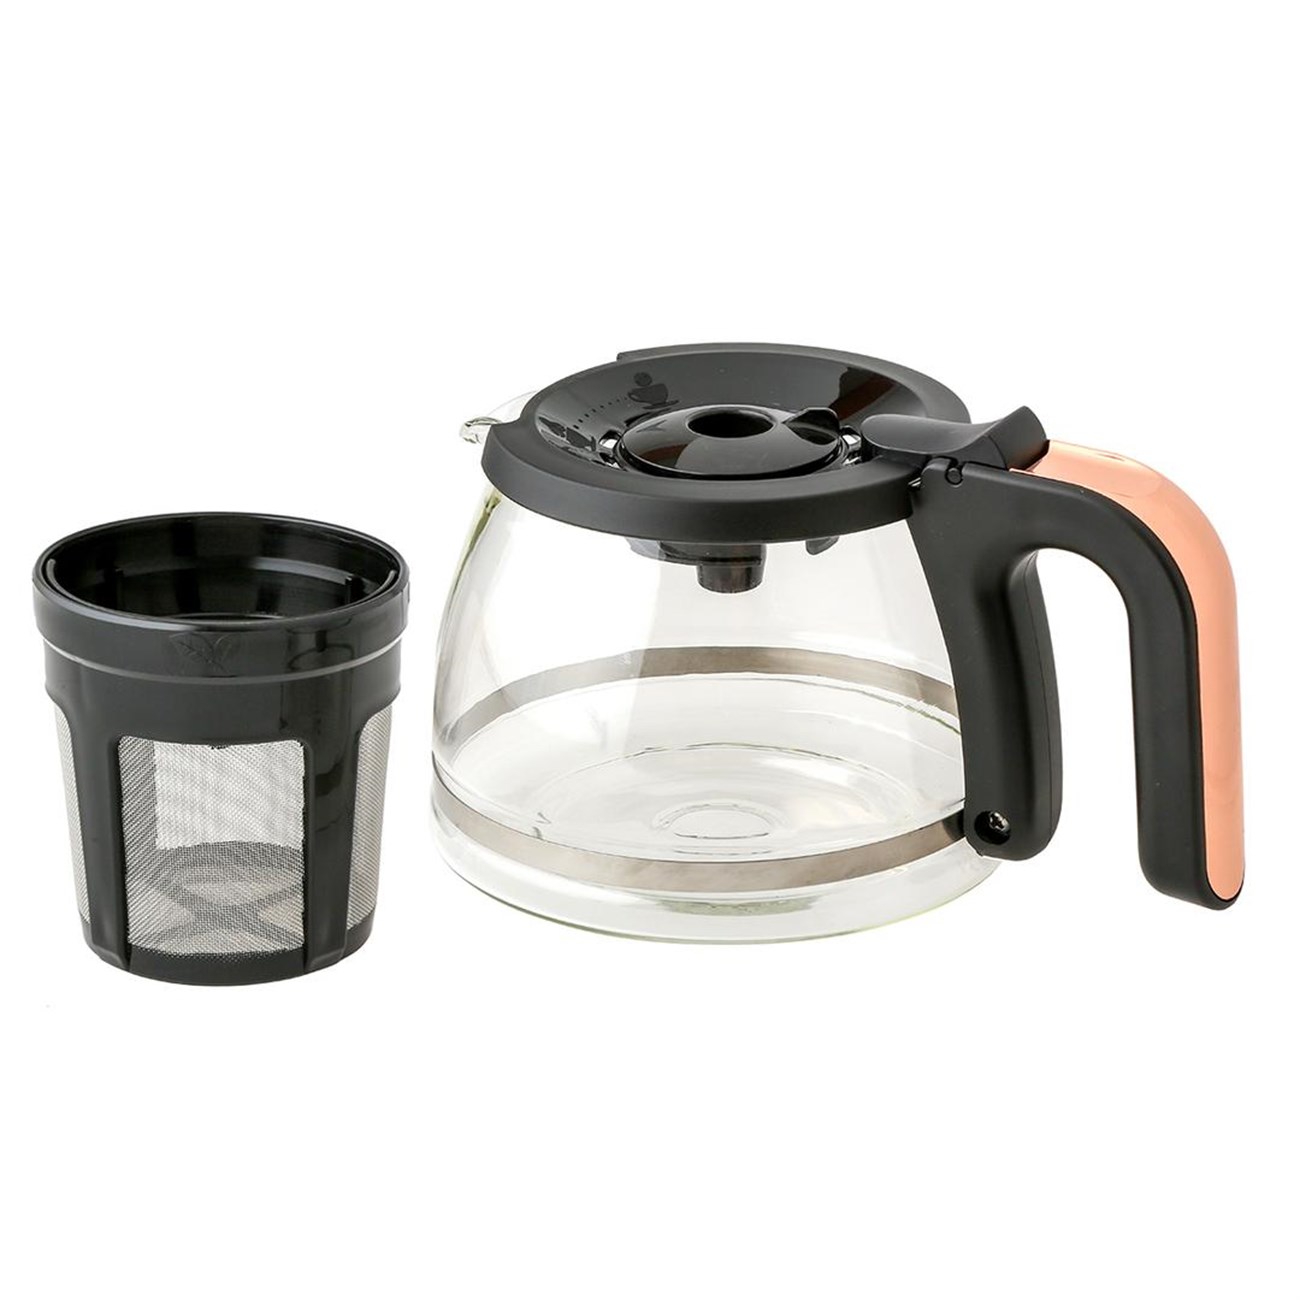 Jumbo Hatır Plus Mod 5 İn 1 Kahve Makinesi Black Copper